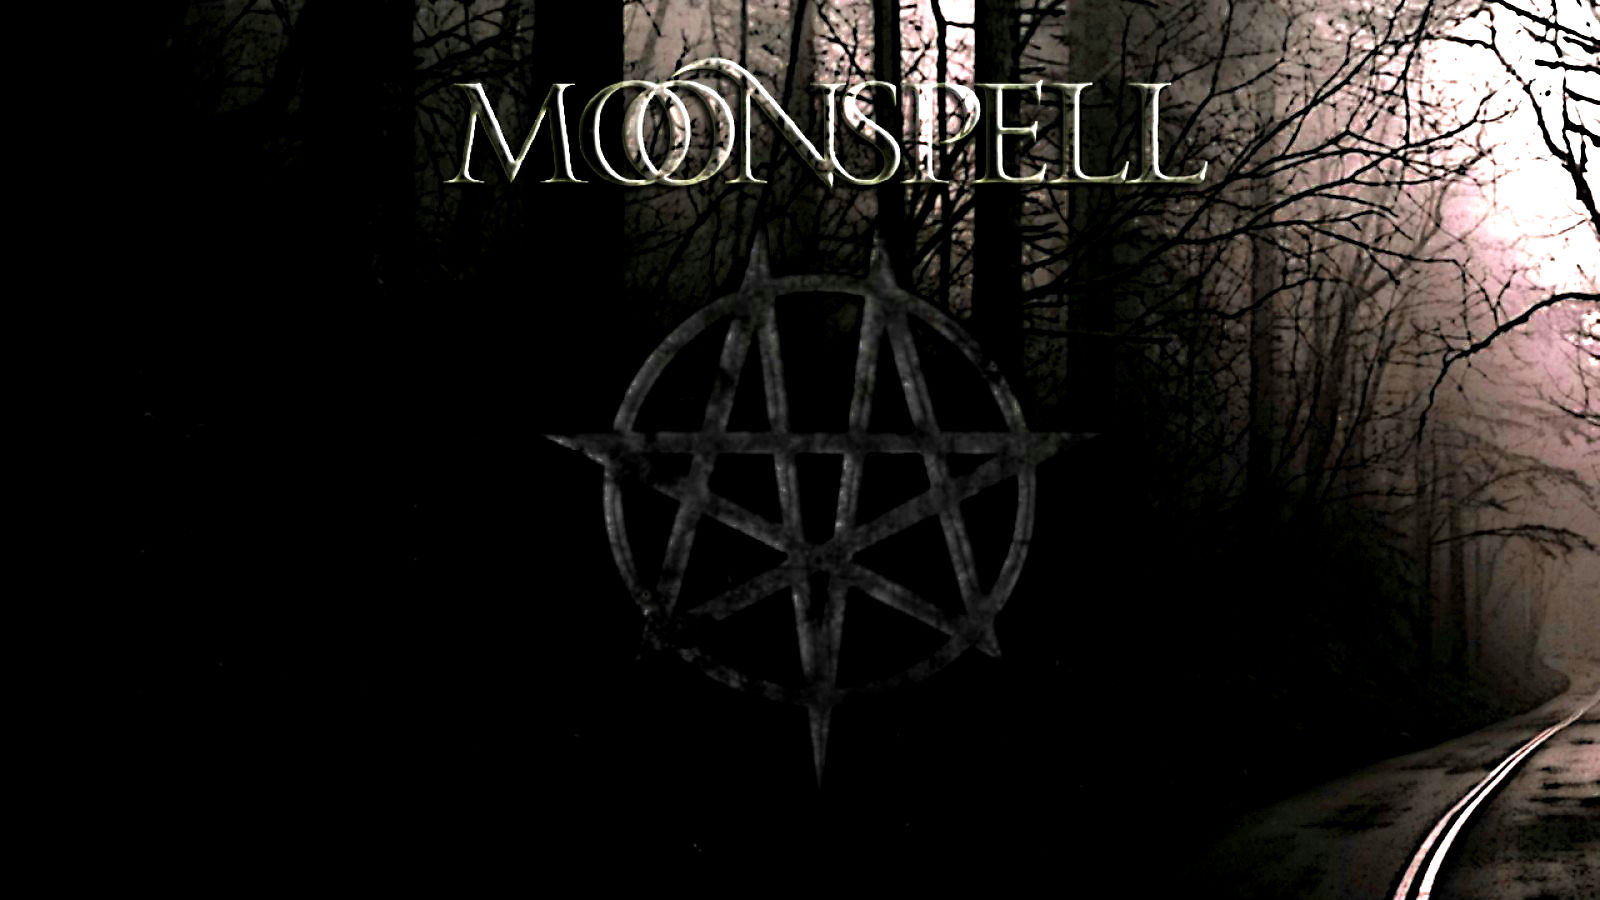 moonspell, Black, Metal, Heavy, Gu Wallpaper